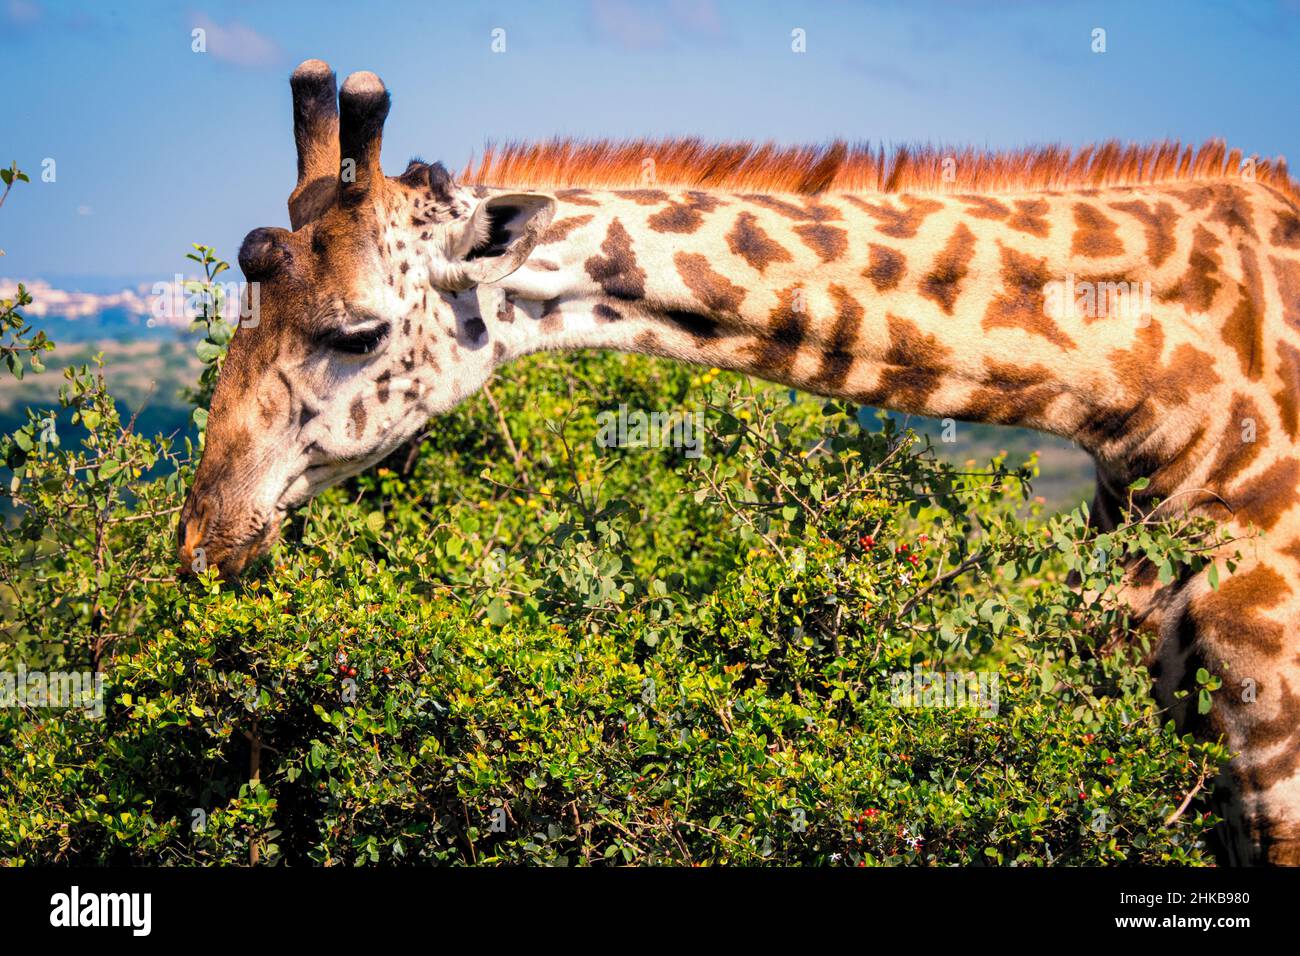 Close-up view of a Masai giraffe eating from a whistling thorn acacia in the savannah of the Nairobi National Park near Nairobi, Kenya Stock Photo